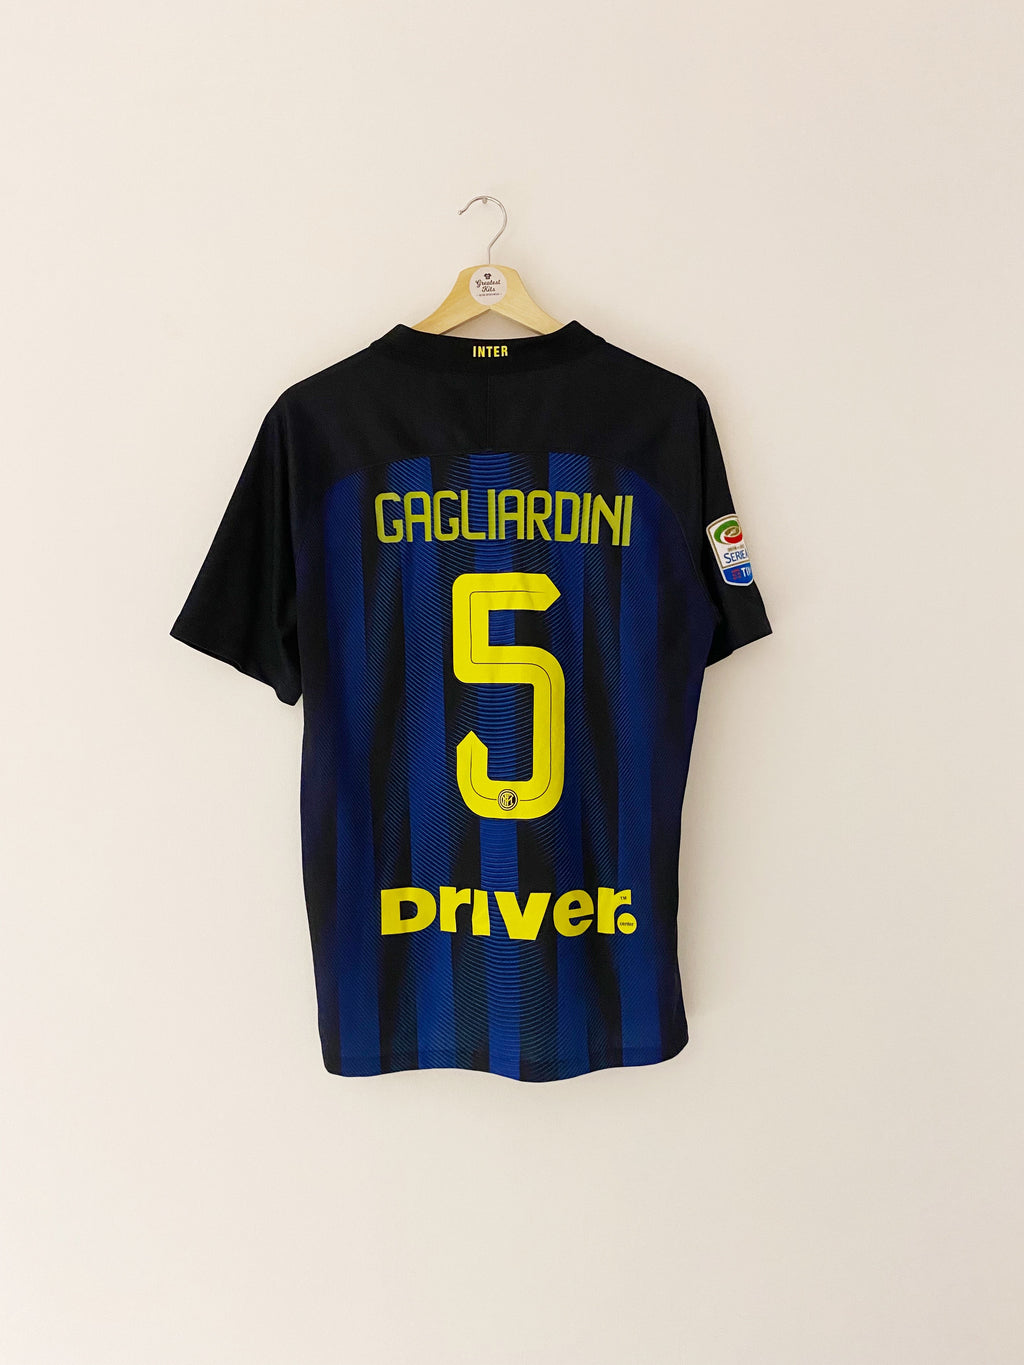 Maillot Domicile Inter Milan 2016/17 Gagliardini #5 (M) 8/10